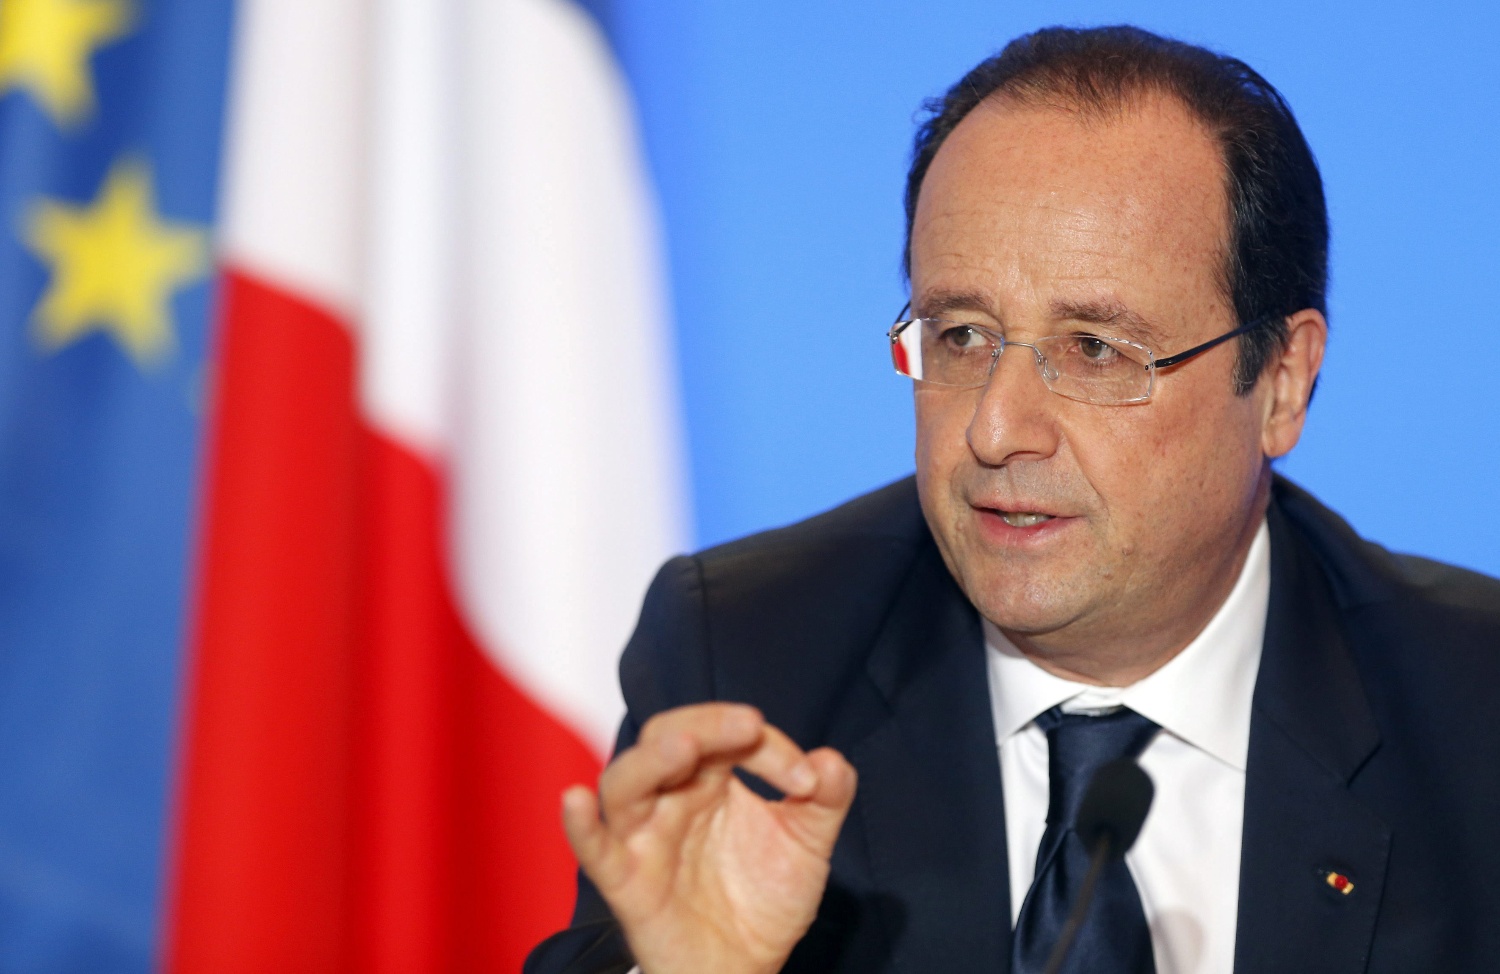 Francois-Hollande-en-un-acto-publico-este-jueves